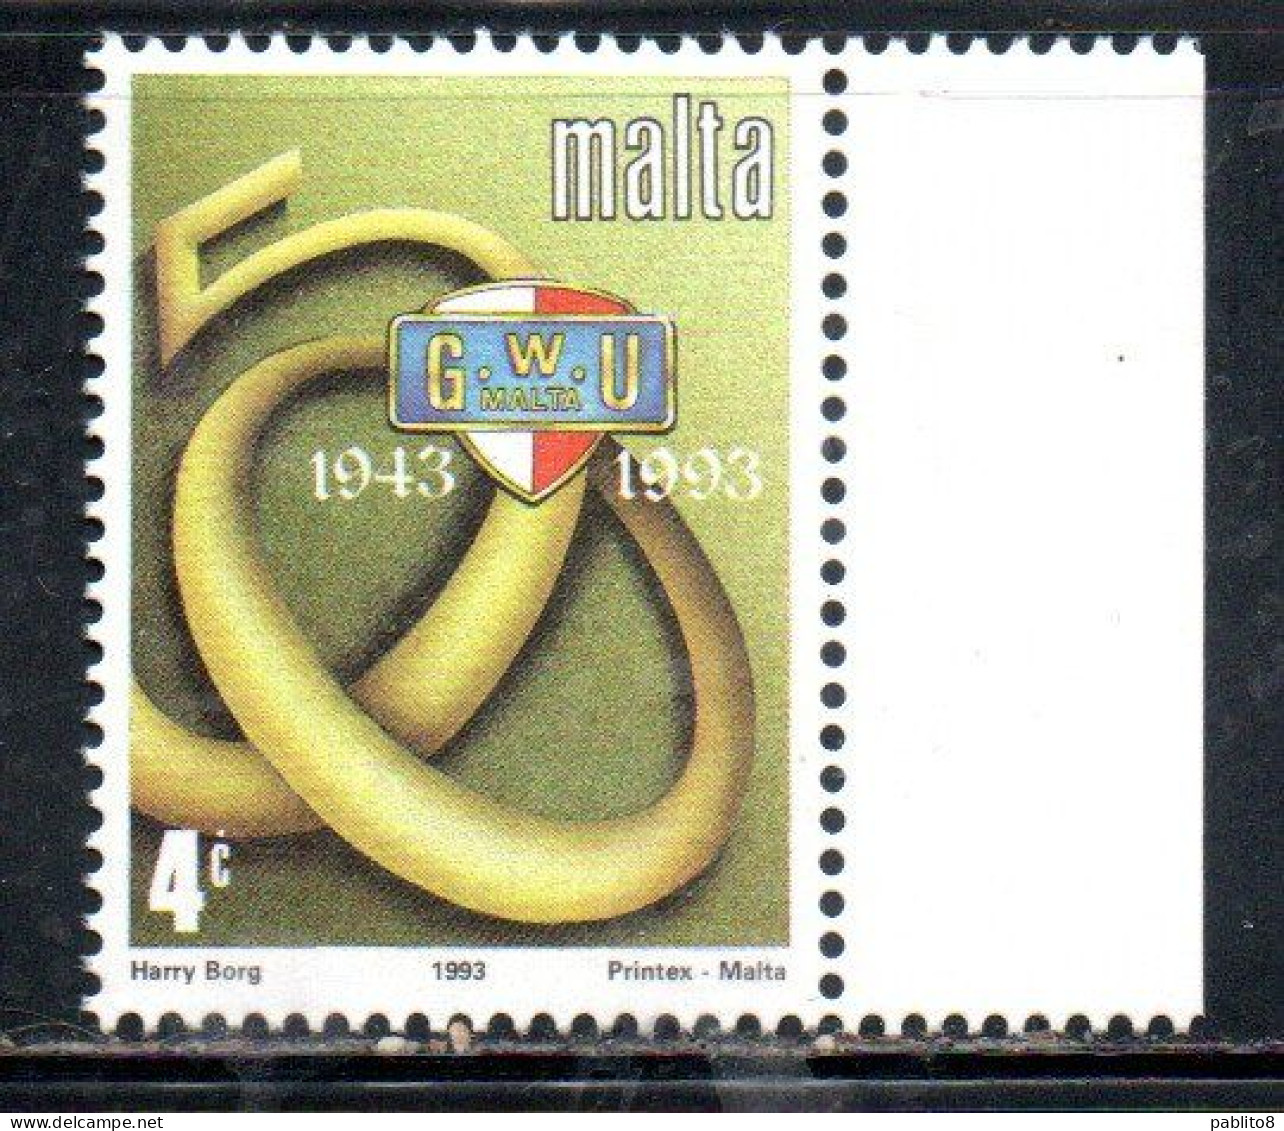 MALTA 1993 GENERAL WORKERS' UNION 50th ANNIVERSARY 4c MNH - Malte